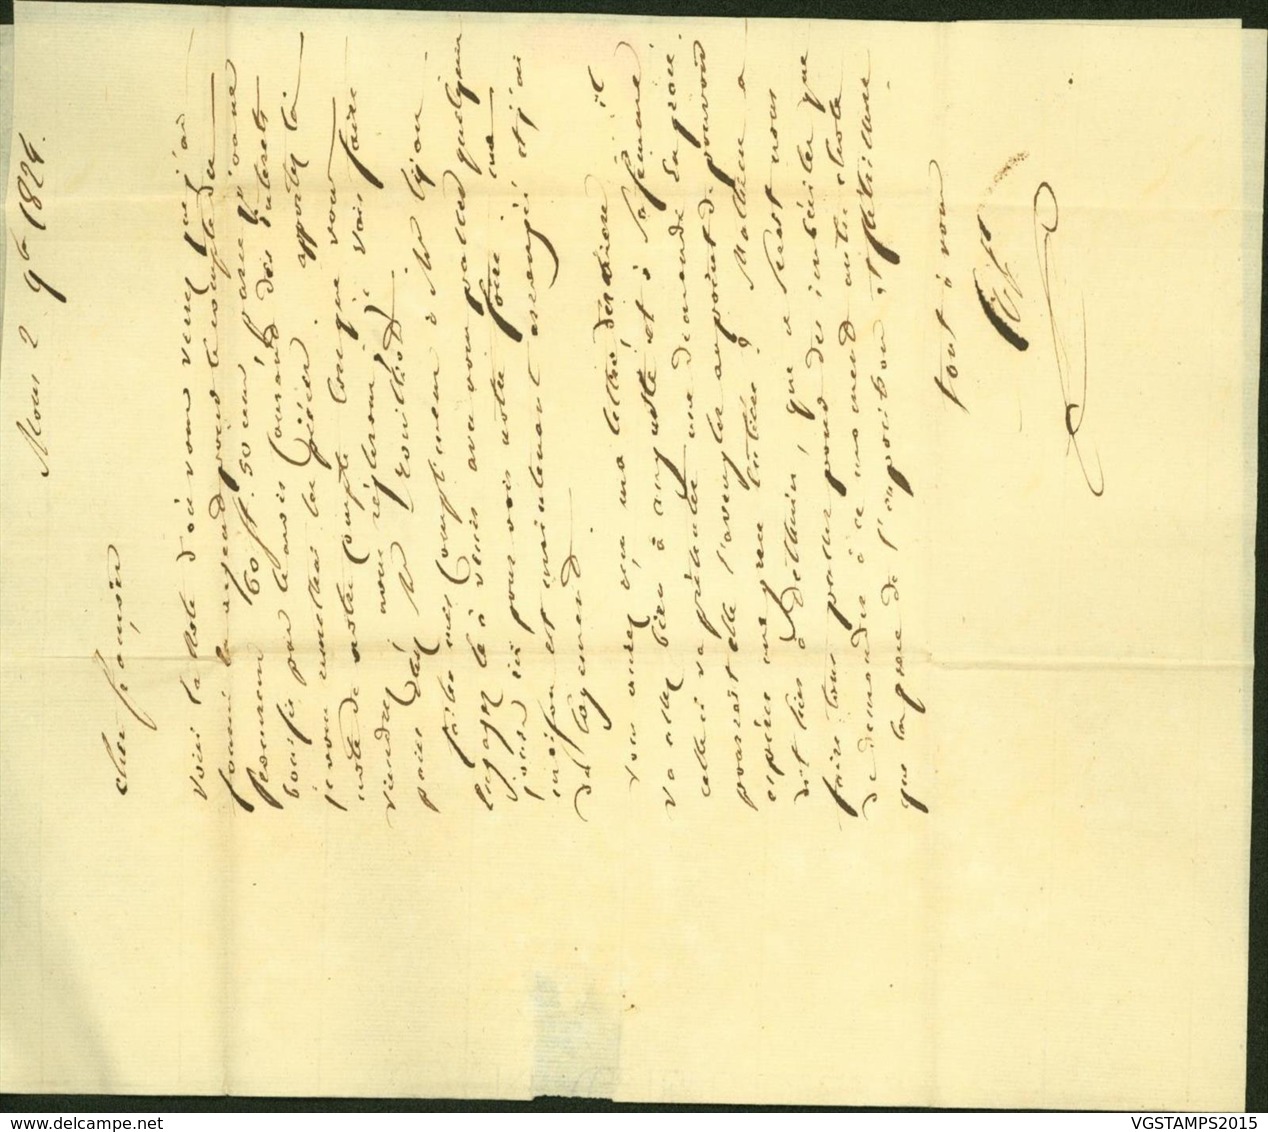 BELGIQUE LETTRE DATE DE MONS 02/11/1824 + GRIFFE BERGEN VERS FONTAINE L'EVEQUE (BE) DC-5412 - 1815-1830 (Periodo Holandes)